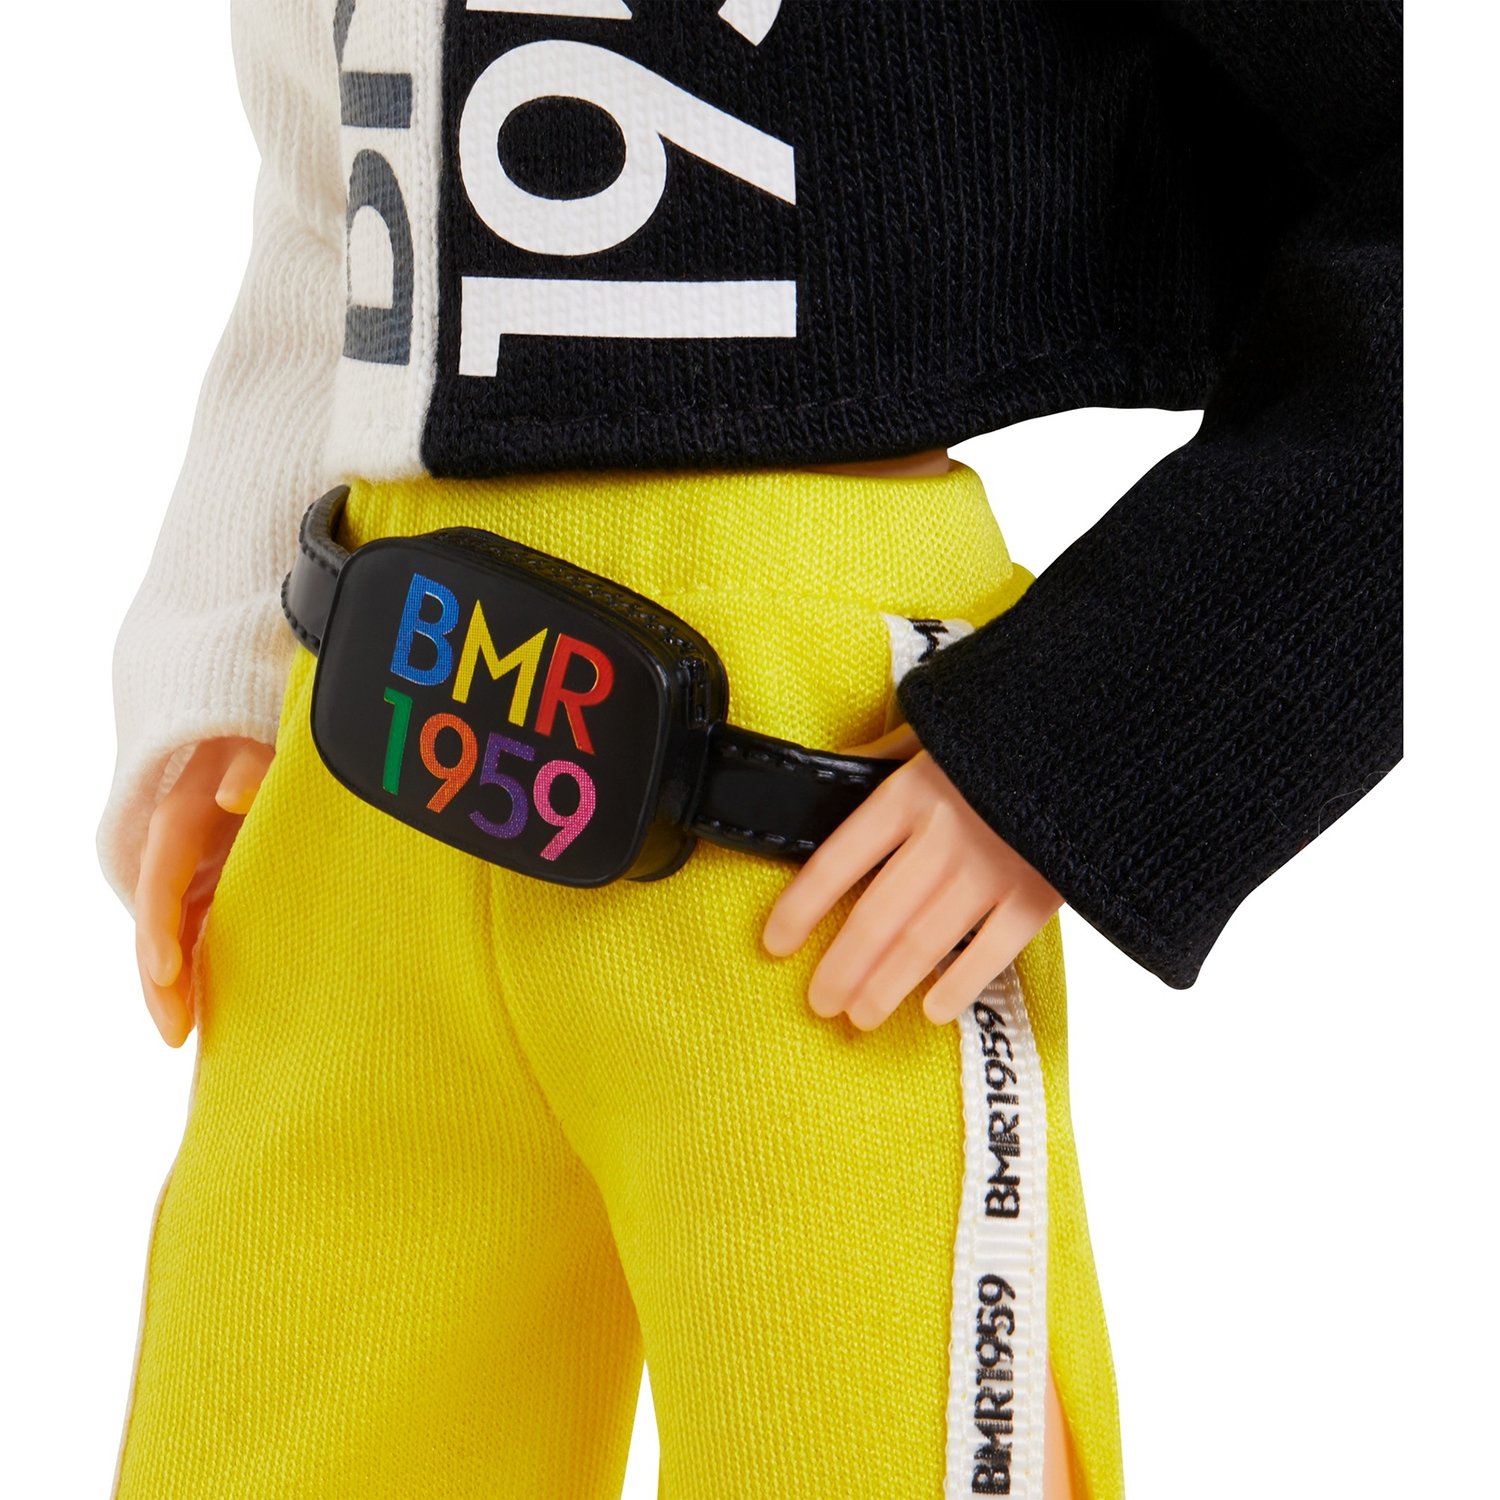 Кукла Barbie GNC49 Коллекционная BMR1959